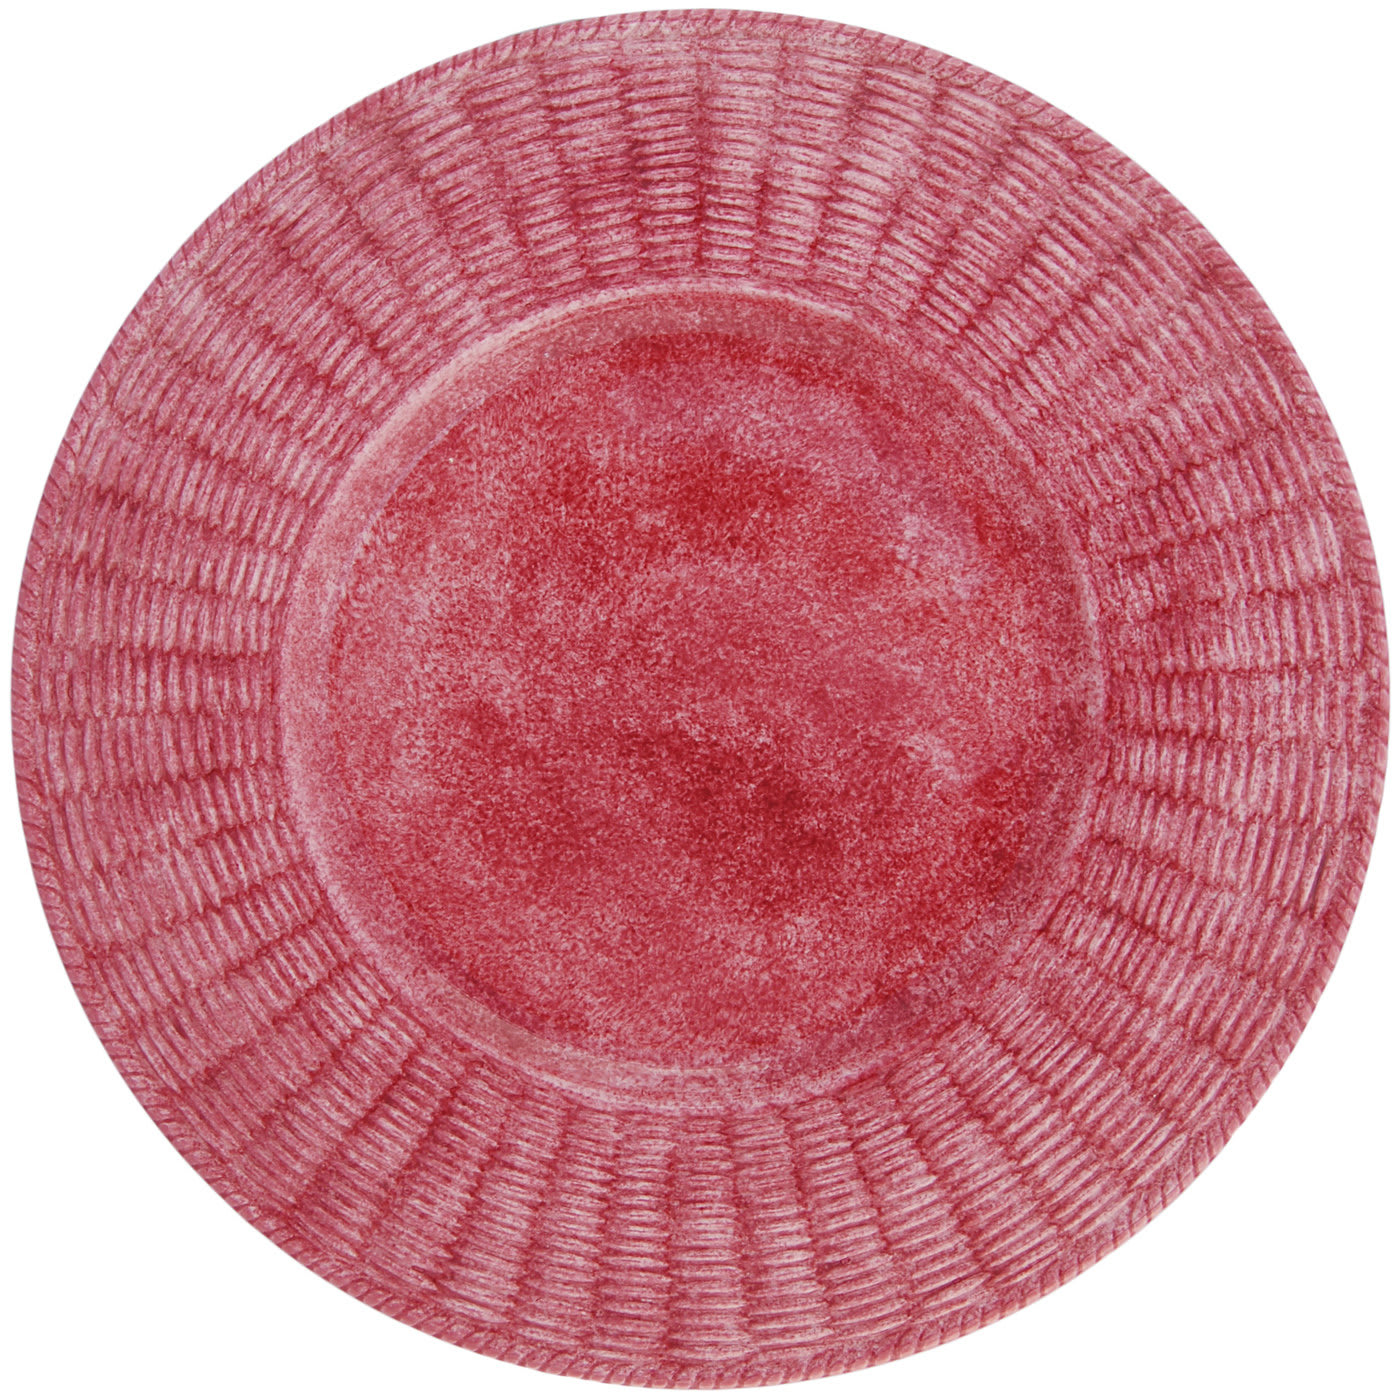 Set of 4 Rosa Wicker Plates - Este Ceramiche